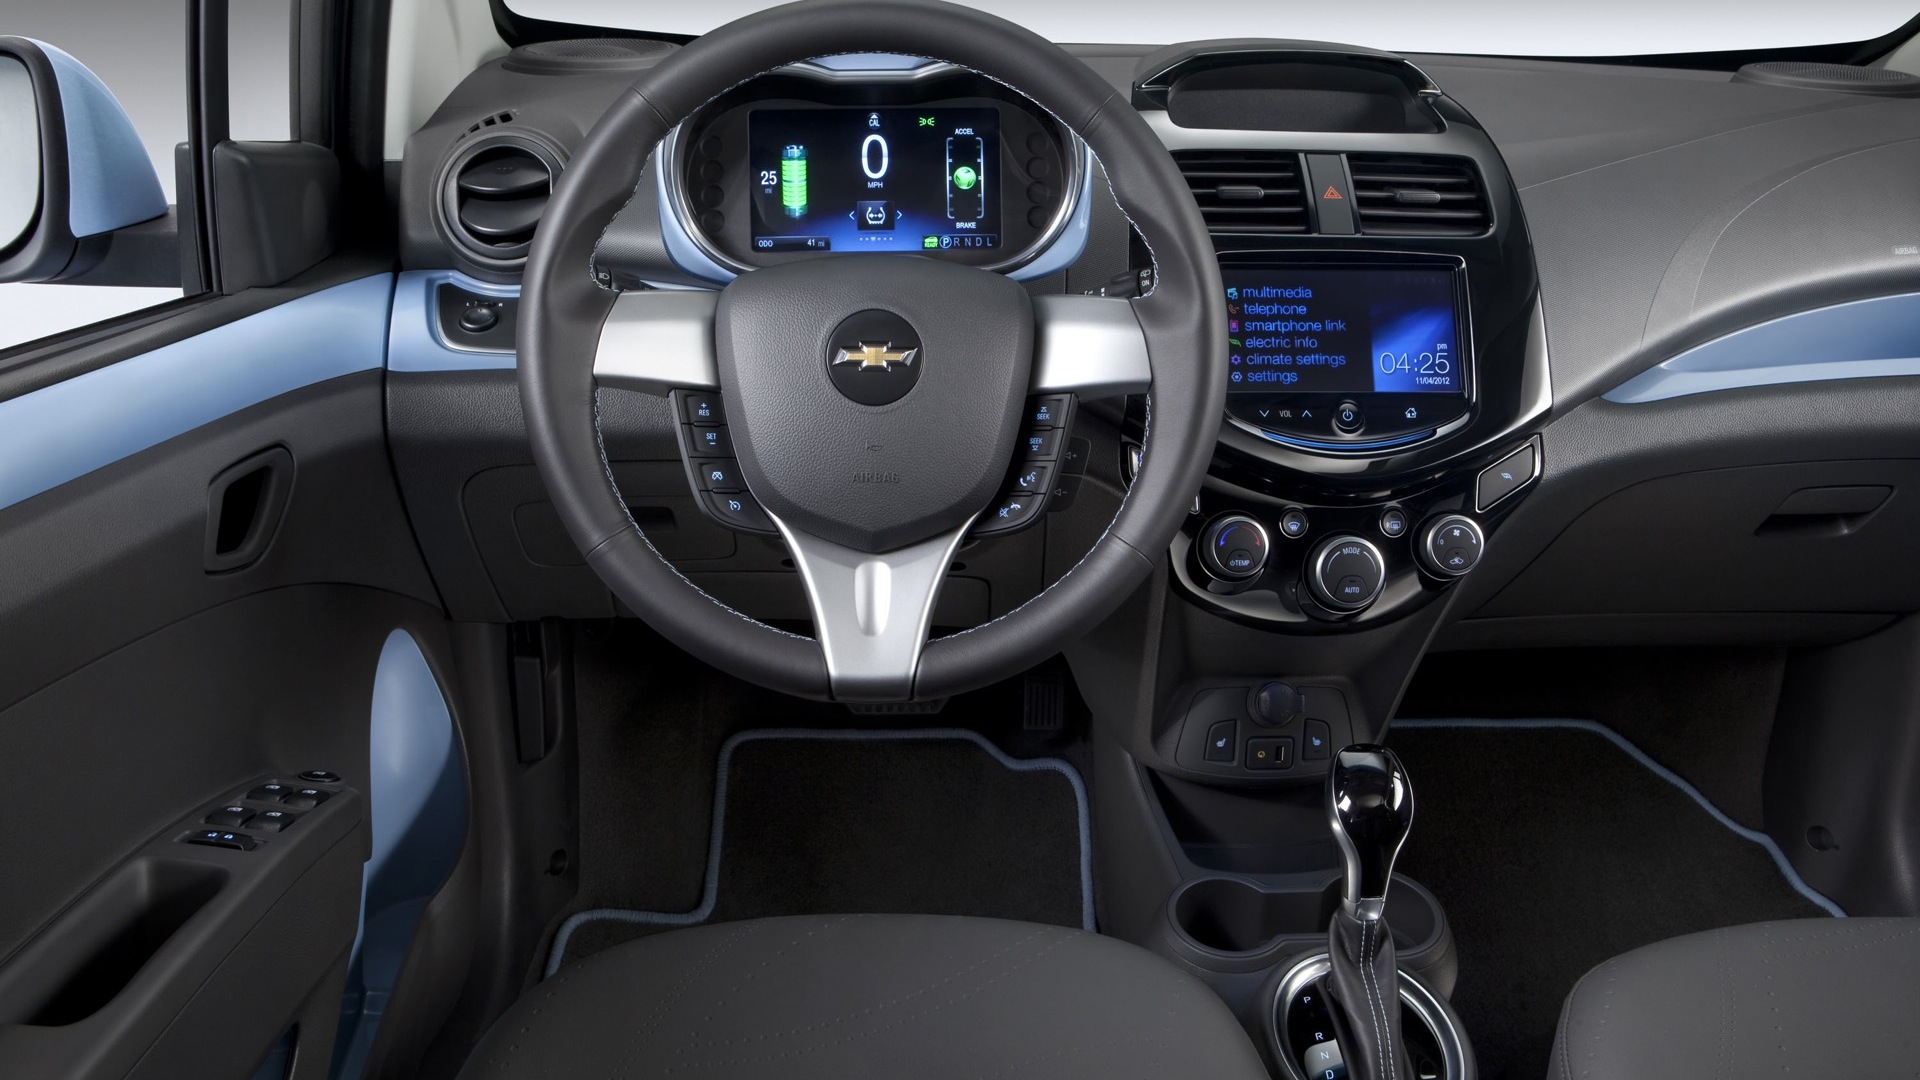 Chevrolet Spark 2013 Base Interior Car Photos Overdrive